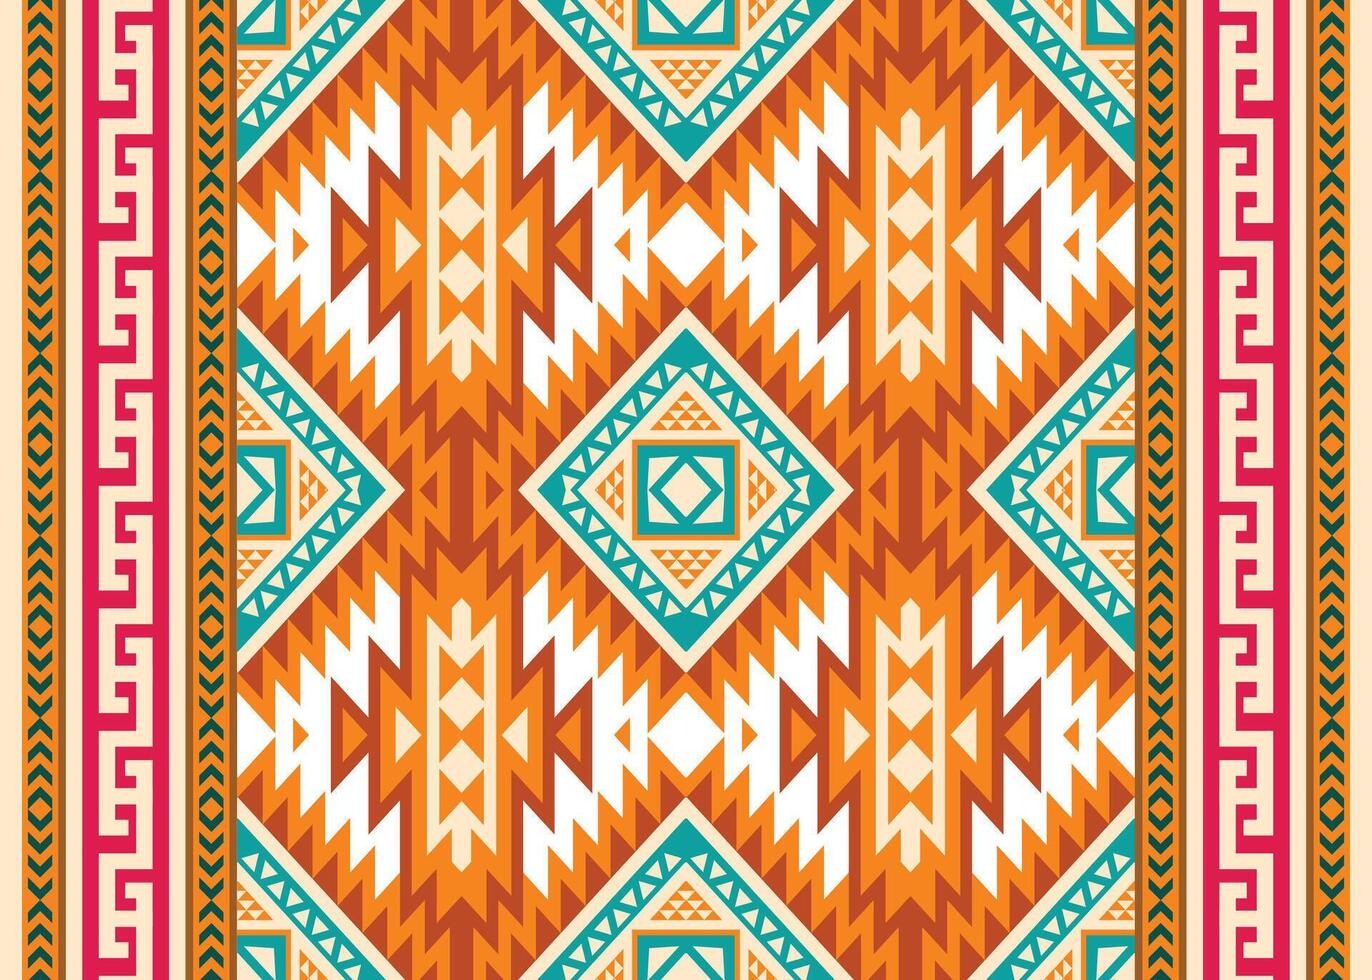 aztec tribal meetkundig etnisch naadloos patroon. wijnoogst inheems Amerikaans Afrikaanse Mexicaans. etnisch oosters vector achtergrond. traditioneel ornament. ontwerp textiel, kleding stof, kleding, gordijn, inpakken.